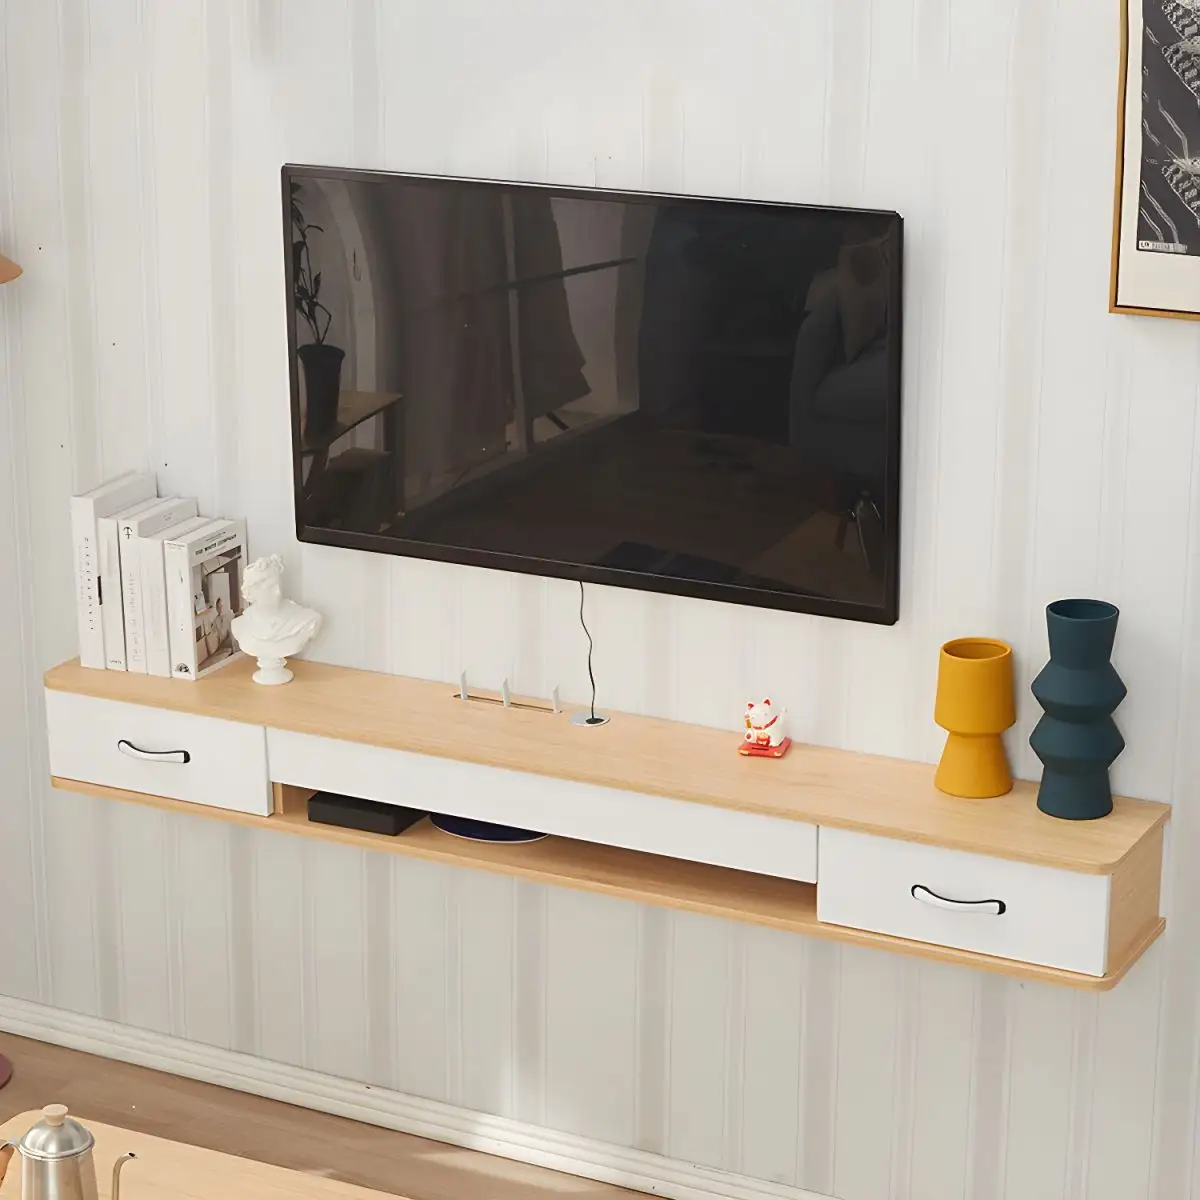 Wohnzimmer-Teiler weiß Unterhaltungszentrum morden Media moderner Fernsehschrank designmontierte Möbel Luxus-Holz-TV-Ständer